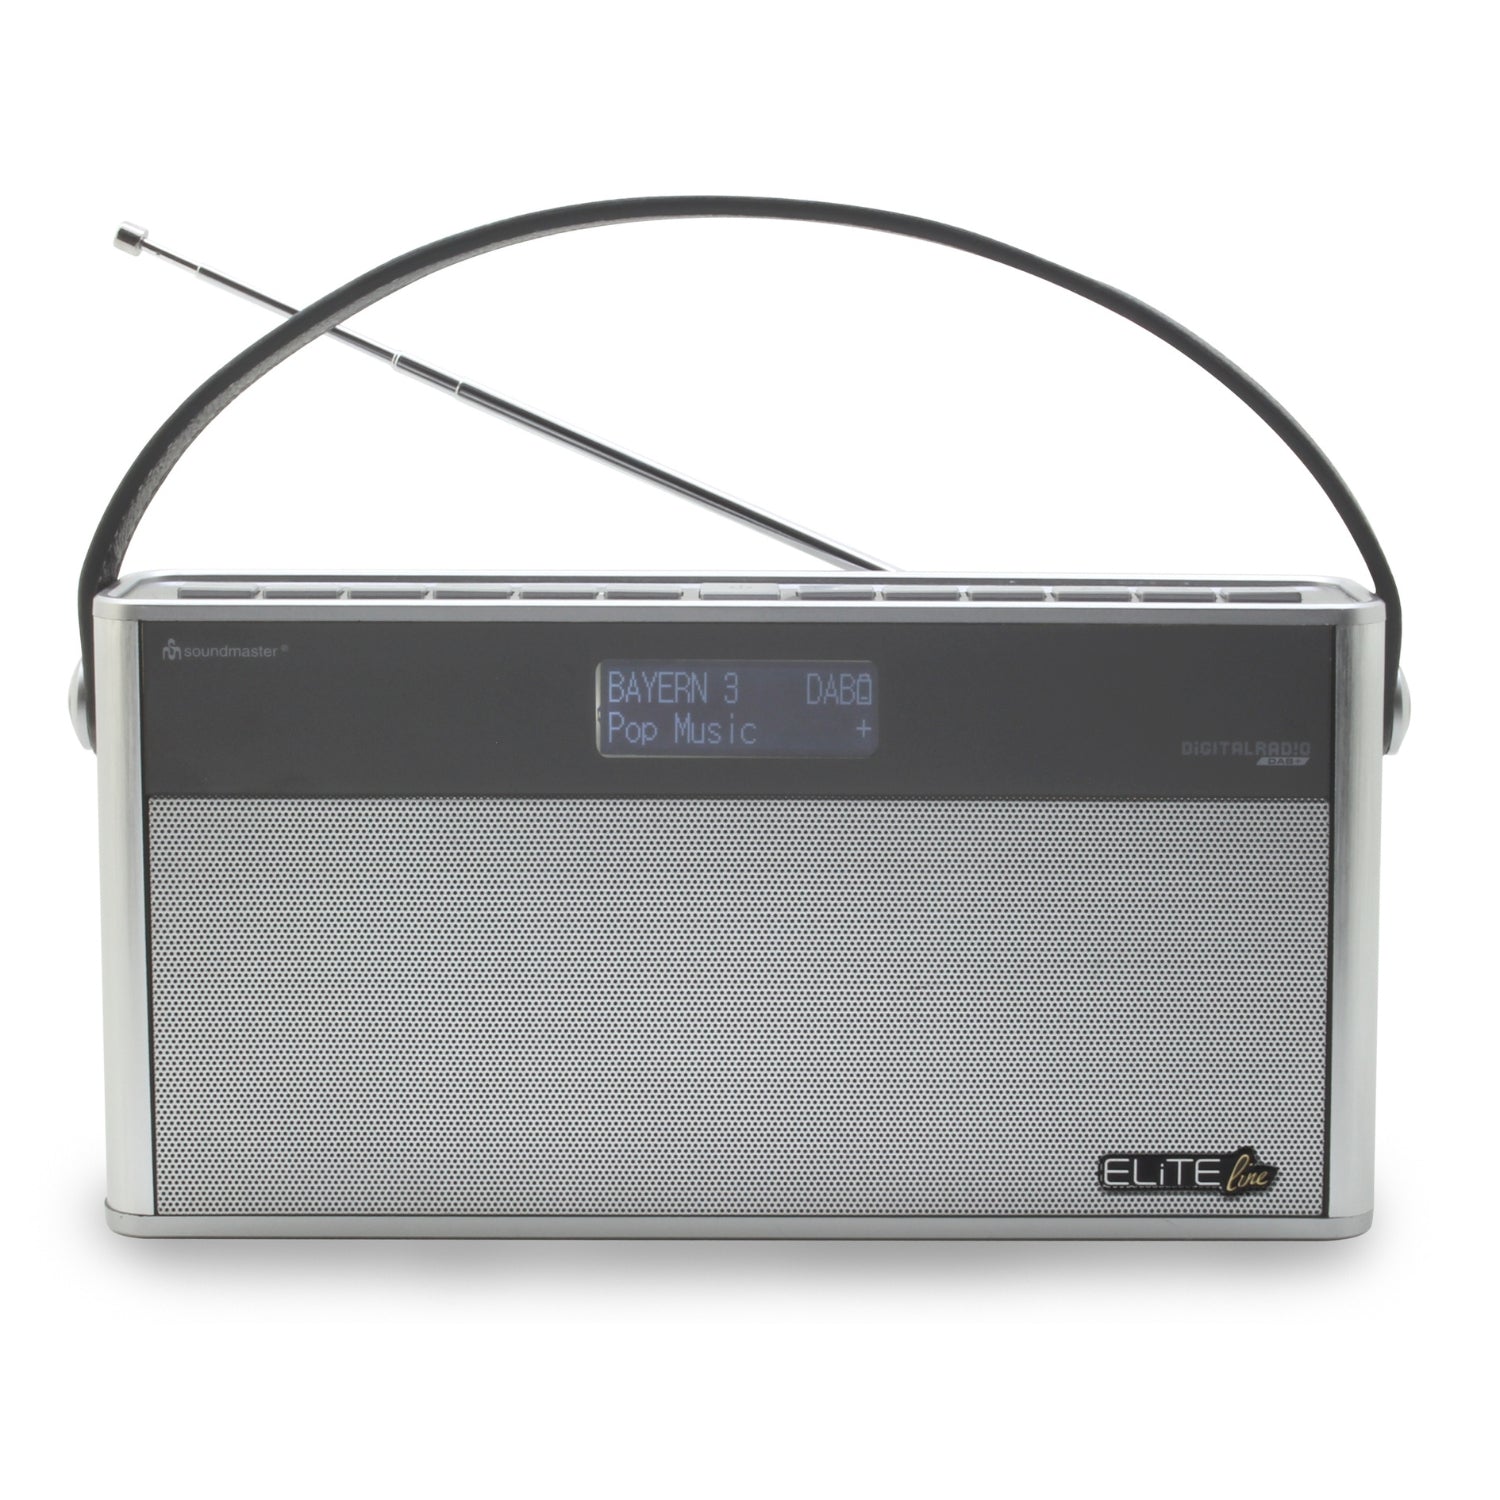 Soundmaster EliteLine DAB750SI radio numérique portable DAB + FM Bluetooth batterie au lithium intégrée